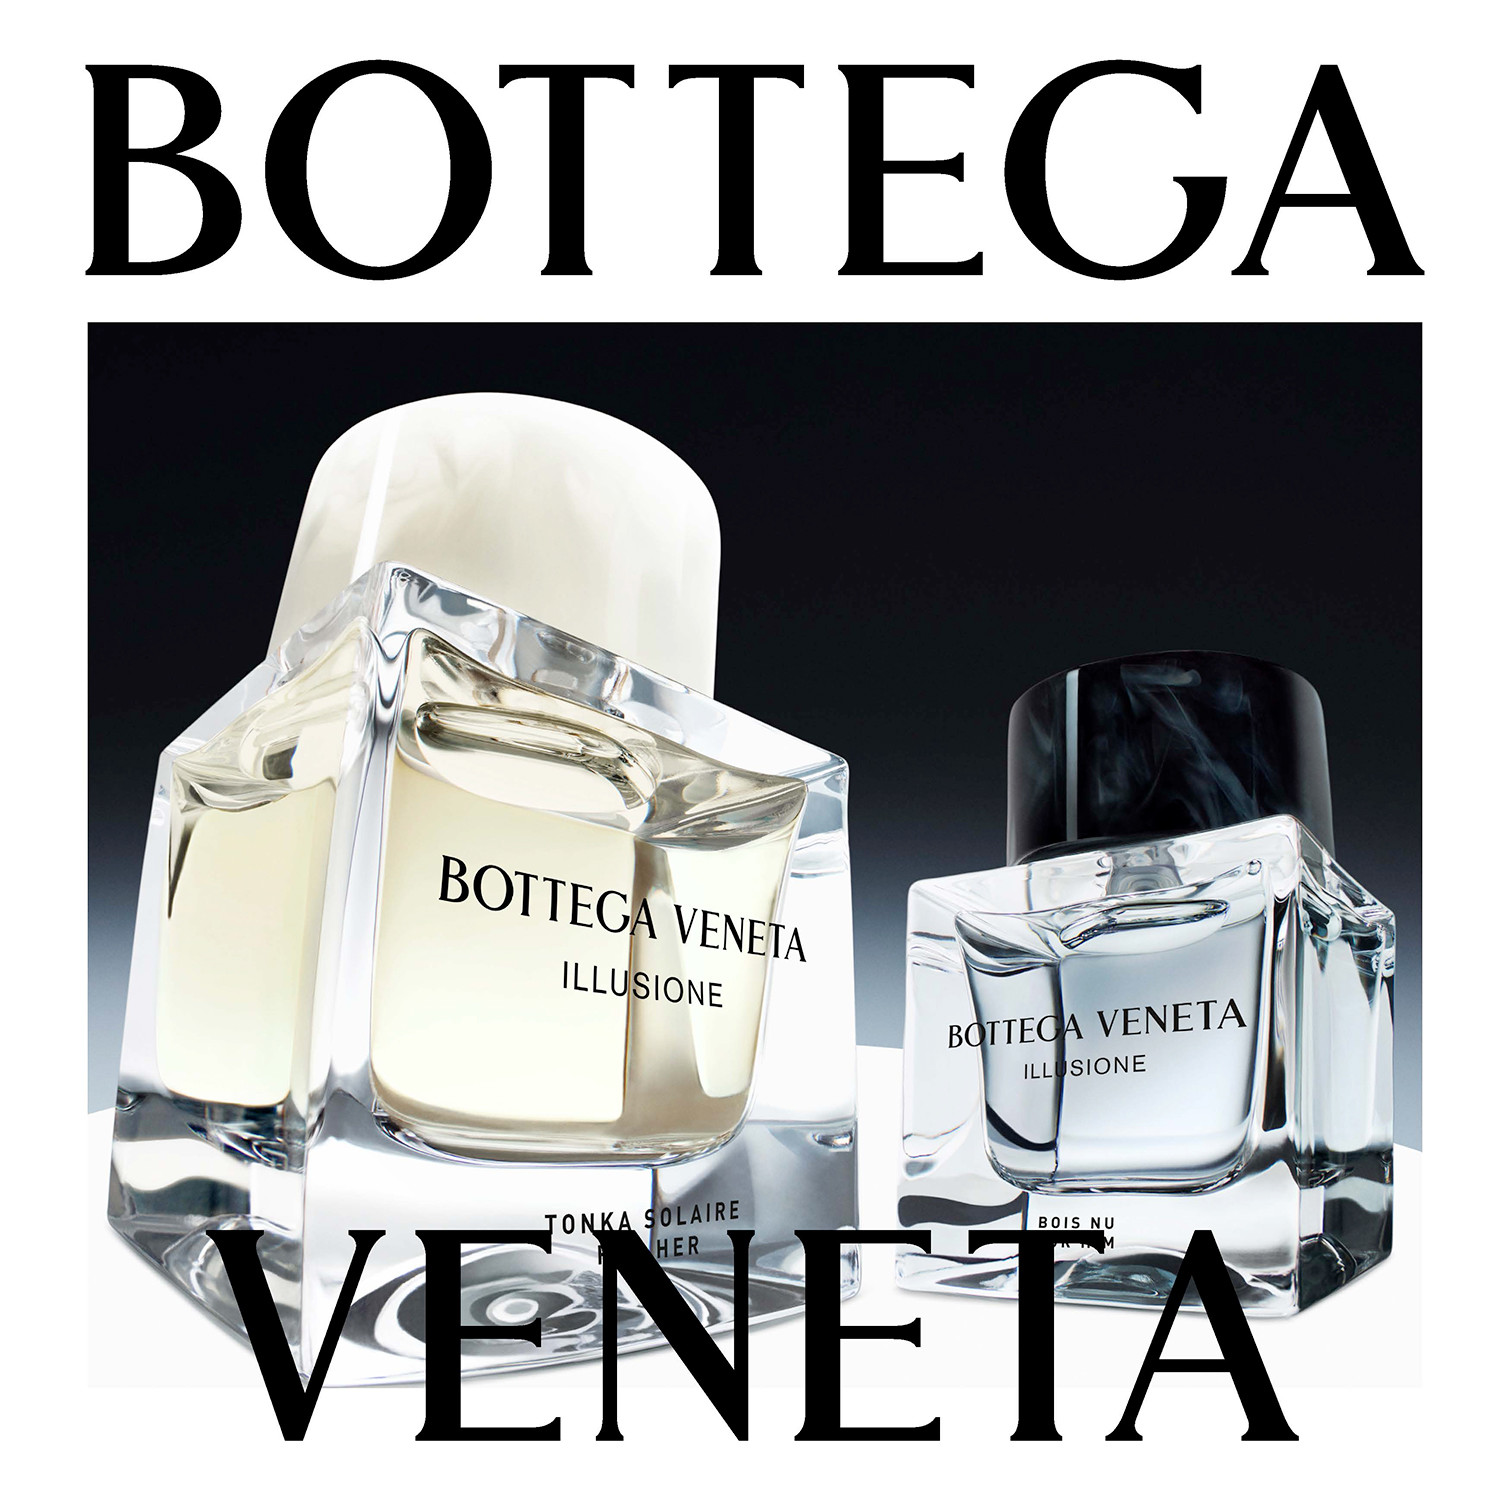 Bottega Veneta "illusione"limited edition campaign, shot by Jean-Marie Binet - © artifices